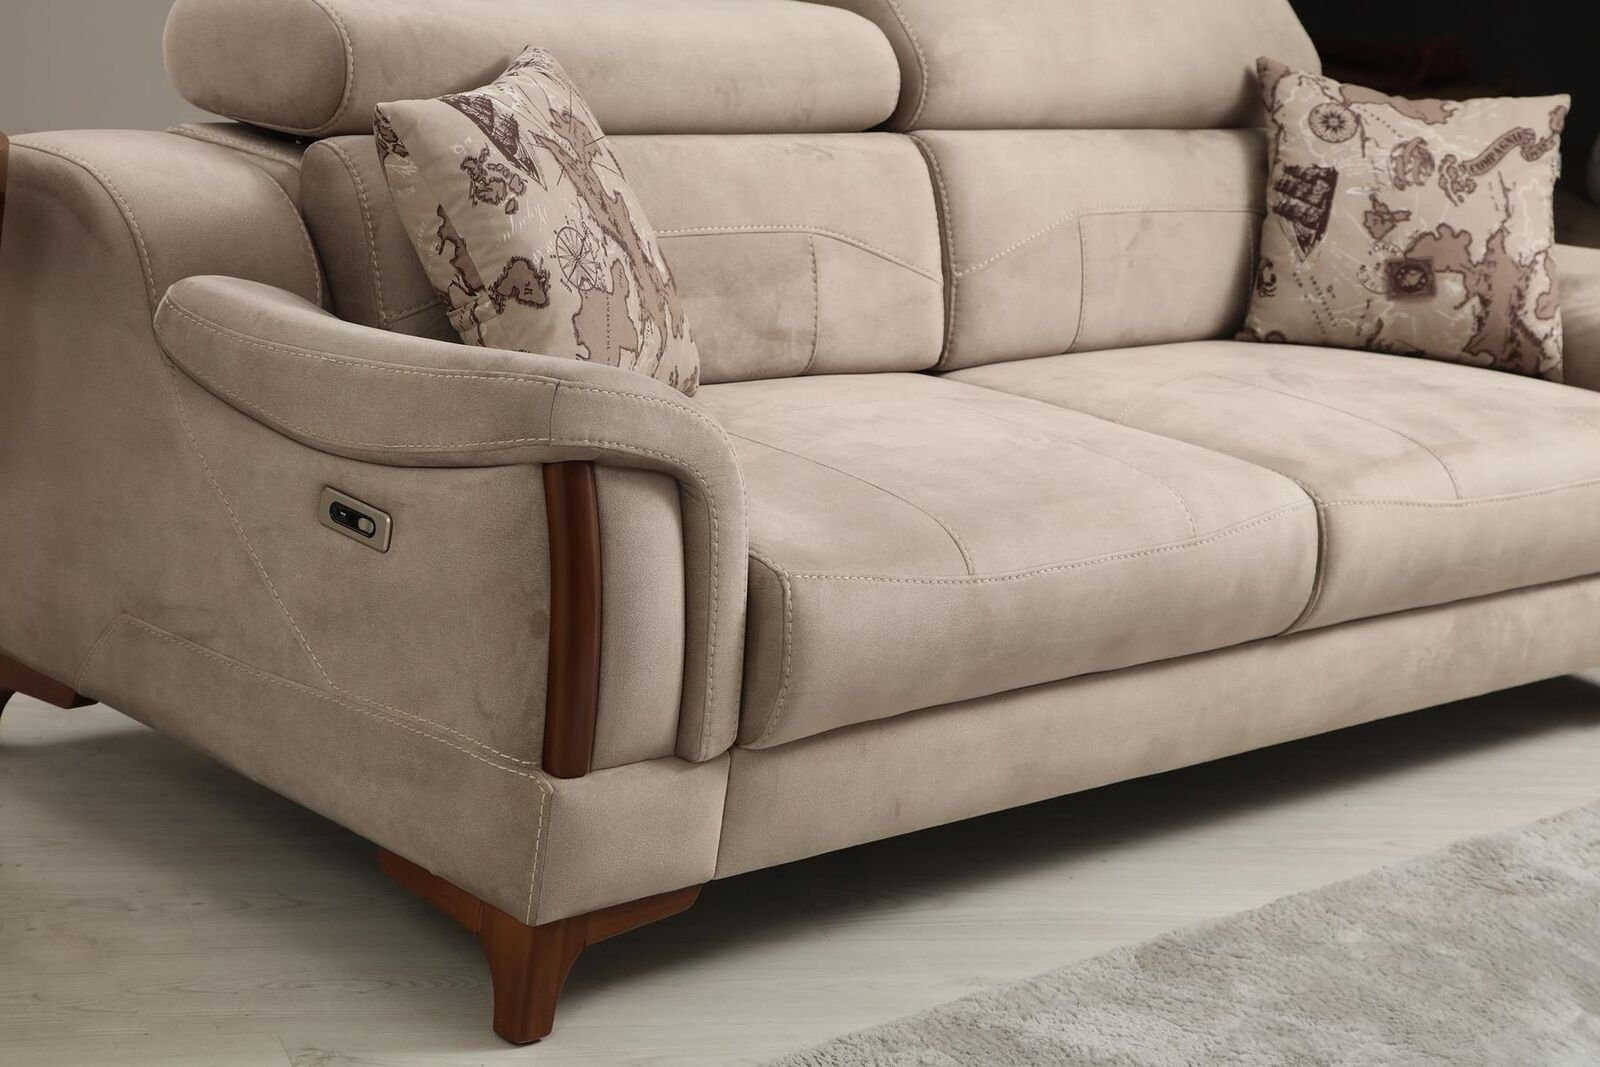 JVmoebel 3-Sitzer Sofa Wohnzimmer Designer Modern Teile, Made Polster Textil, Möbel in 1 Europa